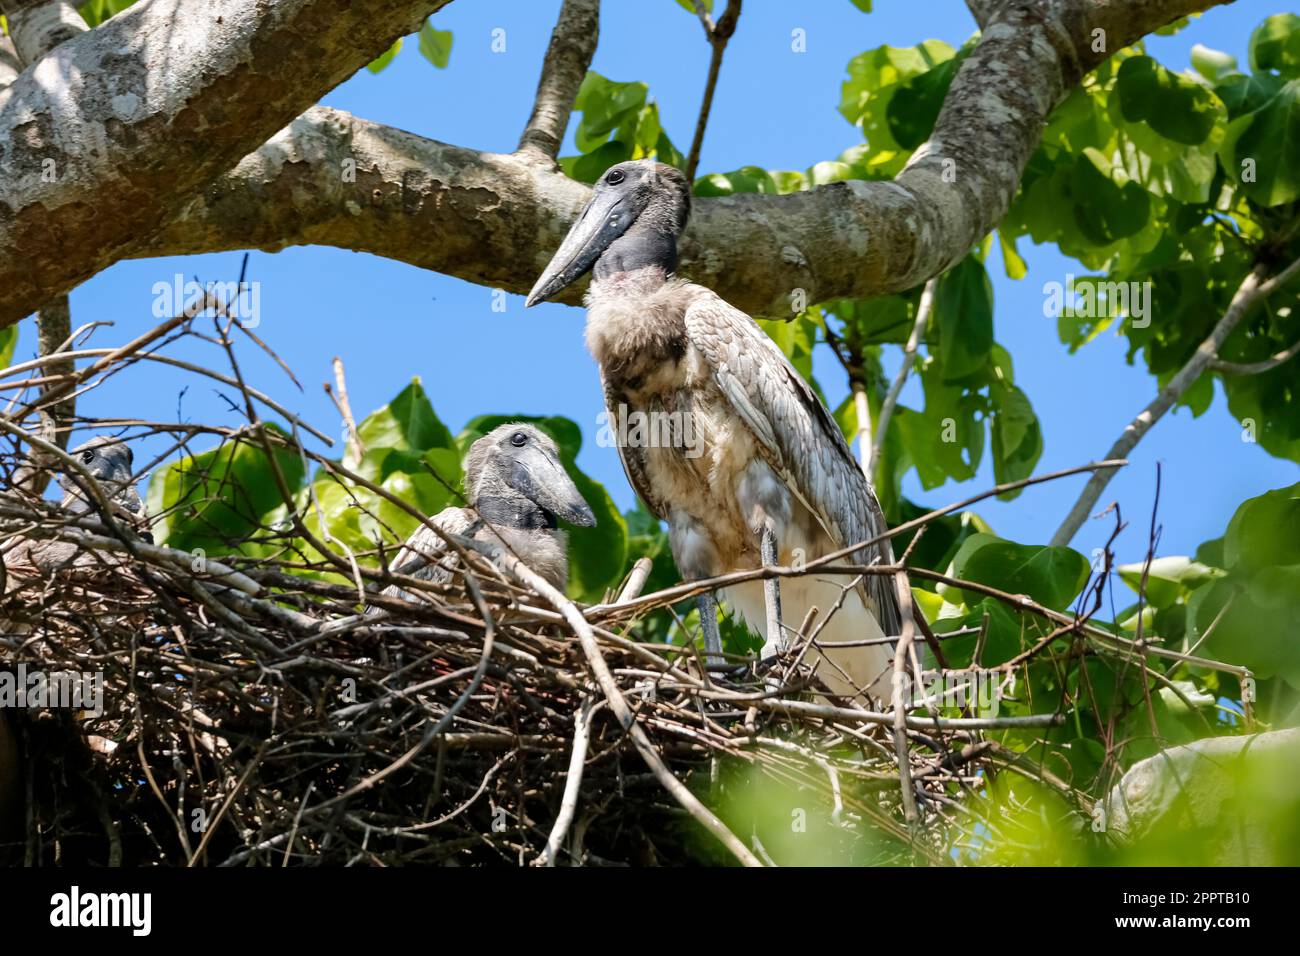 Zwei Jabirustorche schmieden Störche, die in ihrem Nest in einem grünen Baum sitzen, Pantanal Wetlands, Mato Grosso, Brasilien Stockfoto